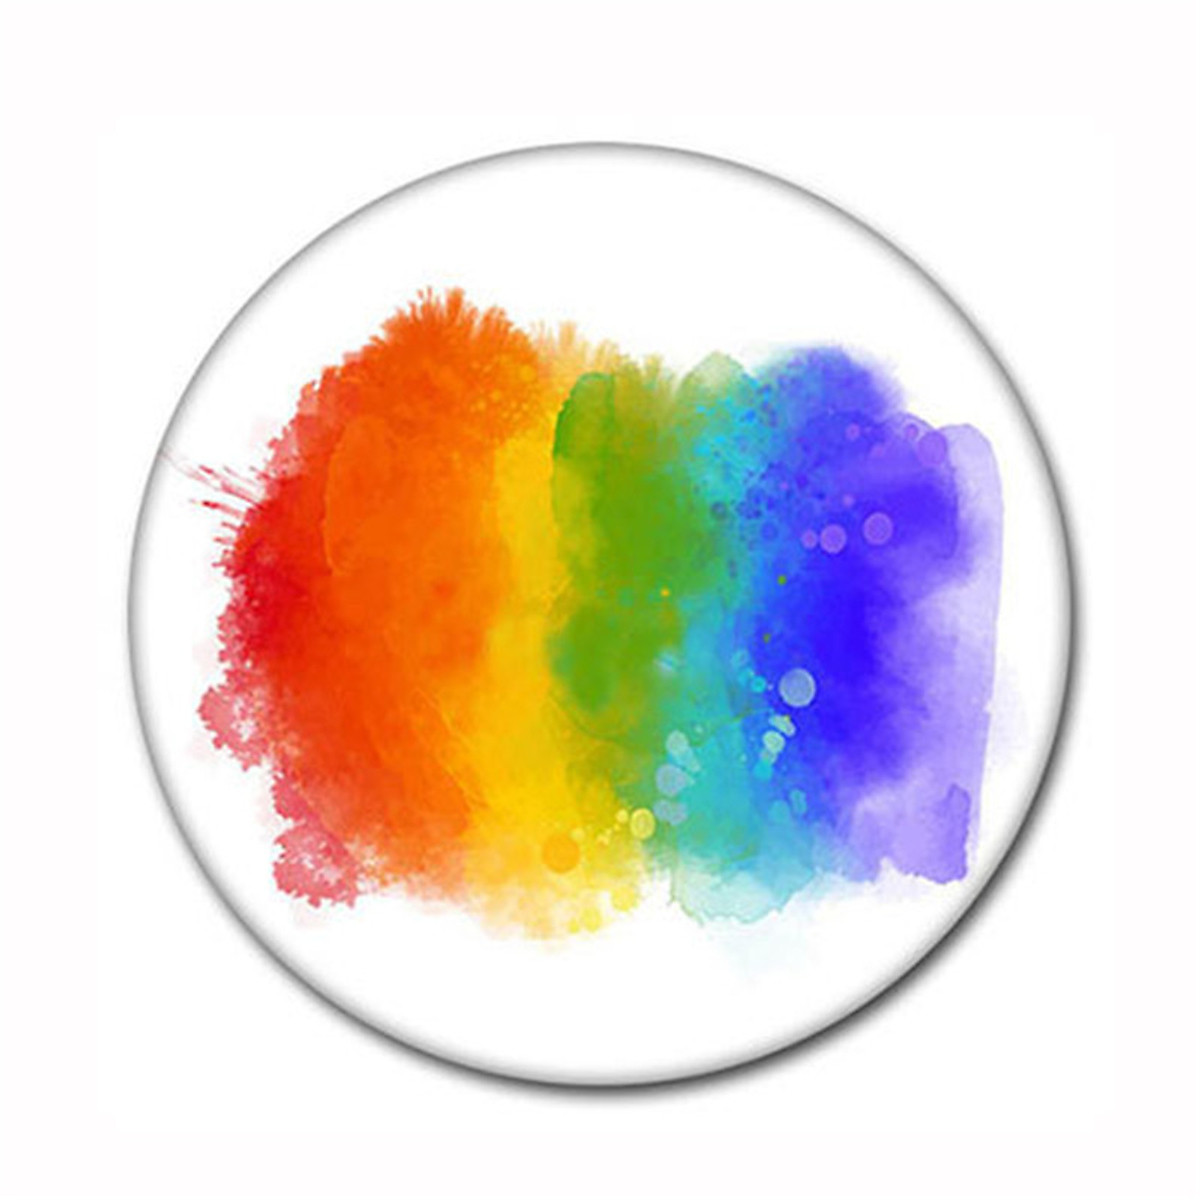 Huy hiệu cờ lục sắc LGBT là biểu tượng của sự đa dạng và tôn trọng cho mọi người, dù là giới tính hay tính dục. Hãy thể hiện niềm tự hào của bạn bằng cách đeo chiếc huy hiệu này lên áo hoặc sử dụng nó để trang trí điện thoại của mình.